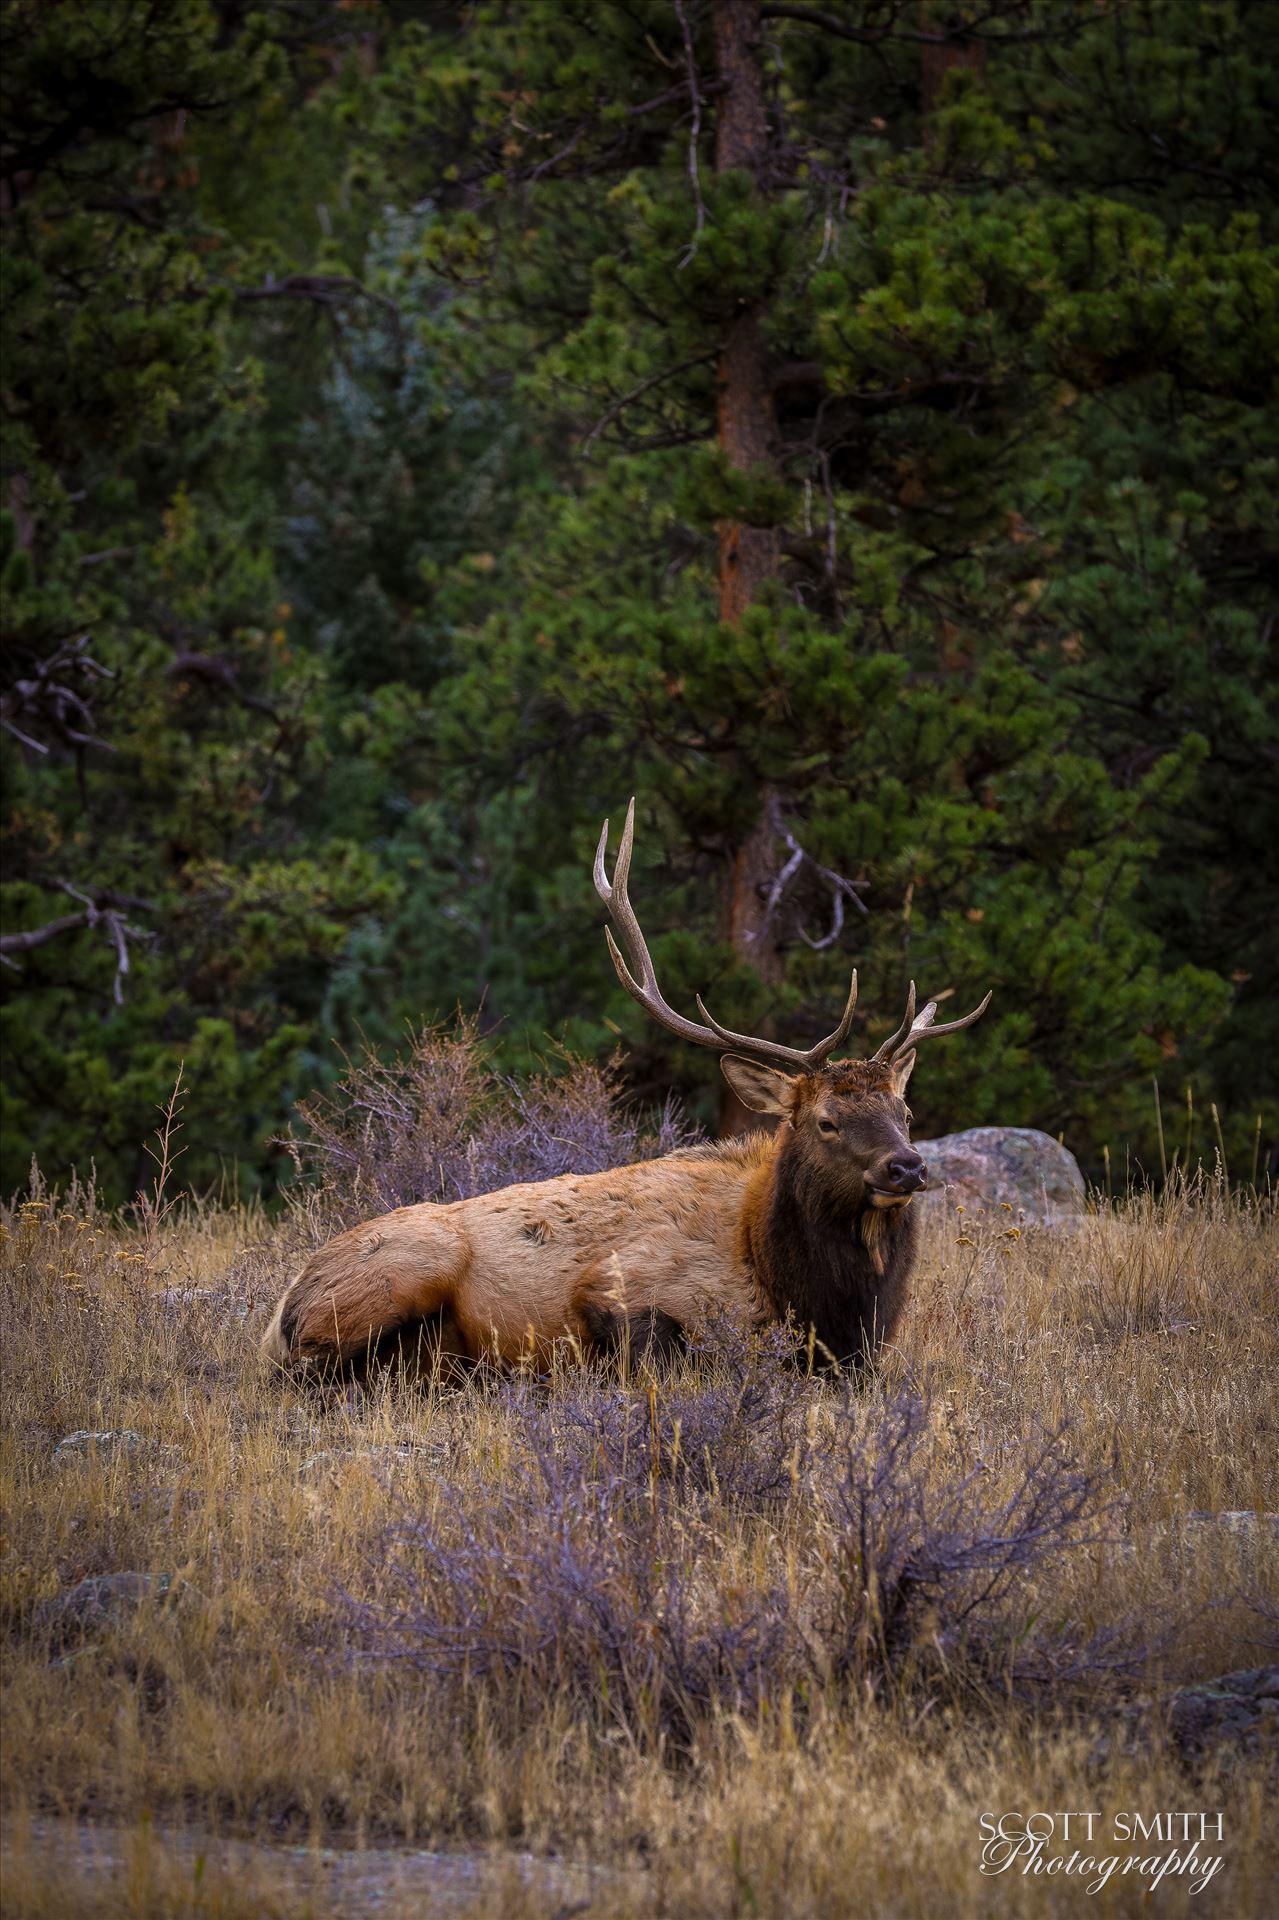 Sunday Elk No 08 A heard of Elk near the entrance to Rocky Mountain National Park, Estes Park, Colorado. by Scott Smith Photos